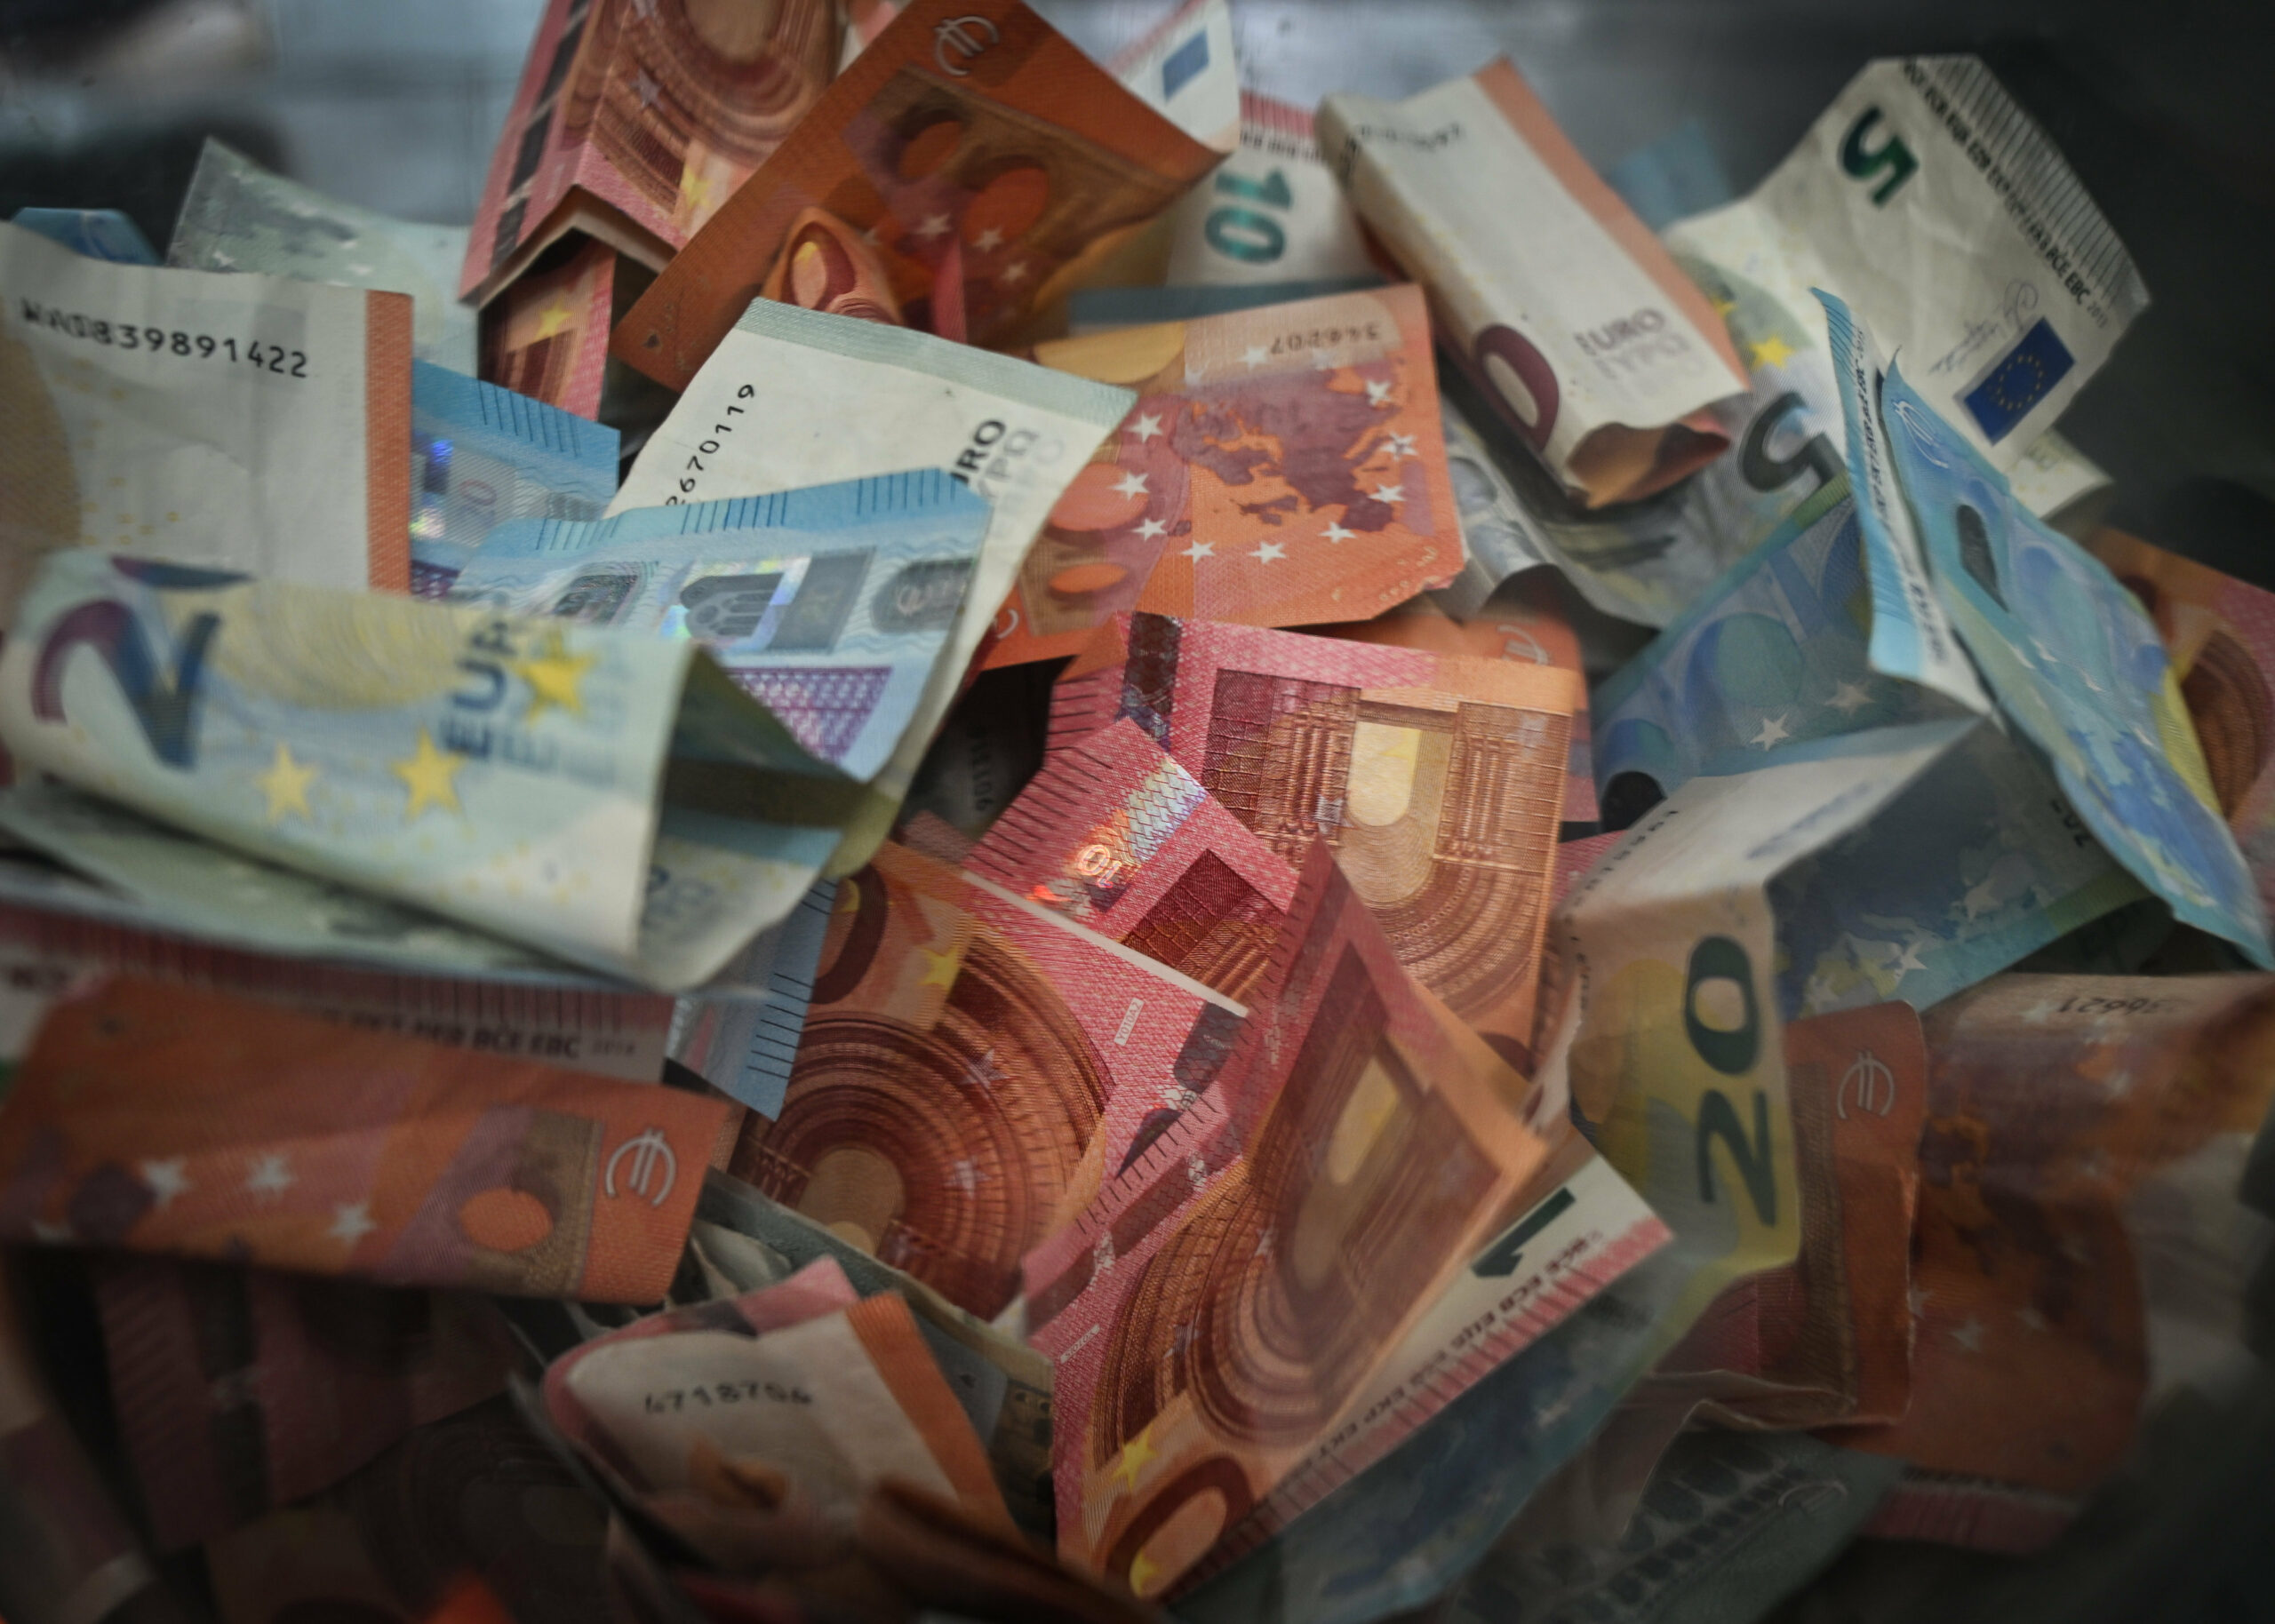 Bargeld, 10- und 20-Euro-Scheine, auf einem Haufen